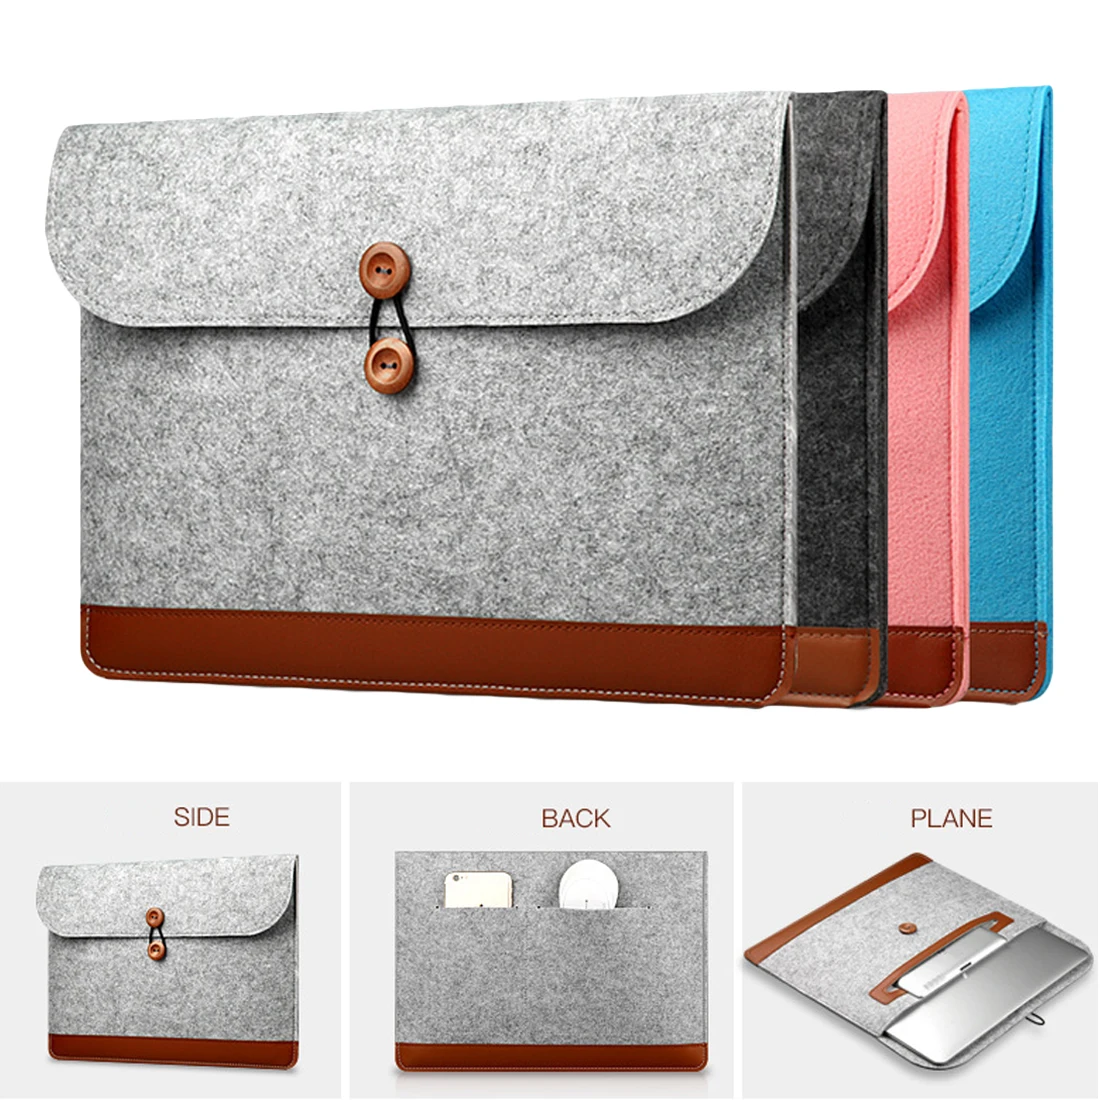 Фото Фетровая сумка для ноутбука Macbook Air Pro Retina 11 12 13 15 дюймов|Сумки и чехлы ноутбуков| |